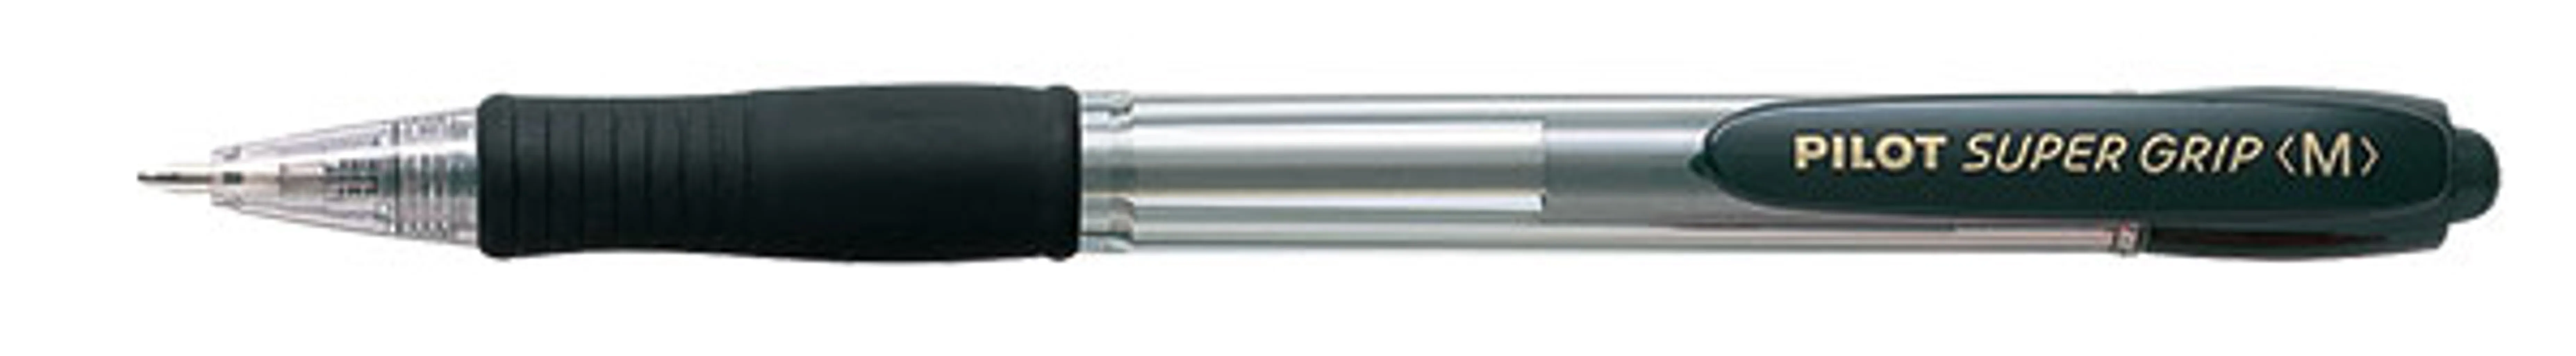 bp gp-10-rm super grip ballpoint pen